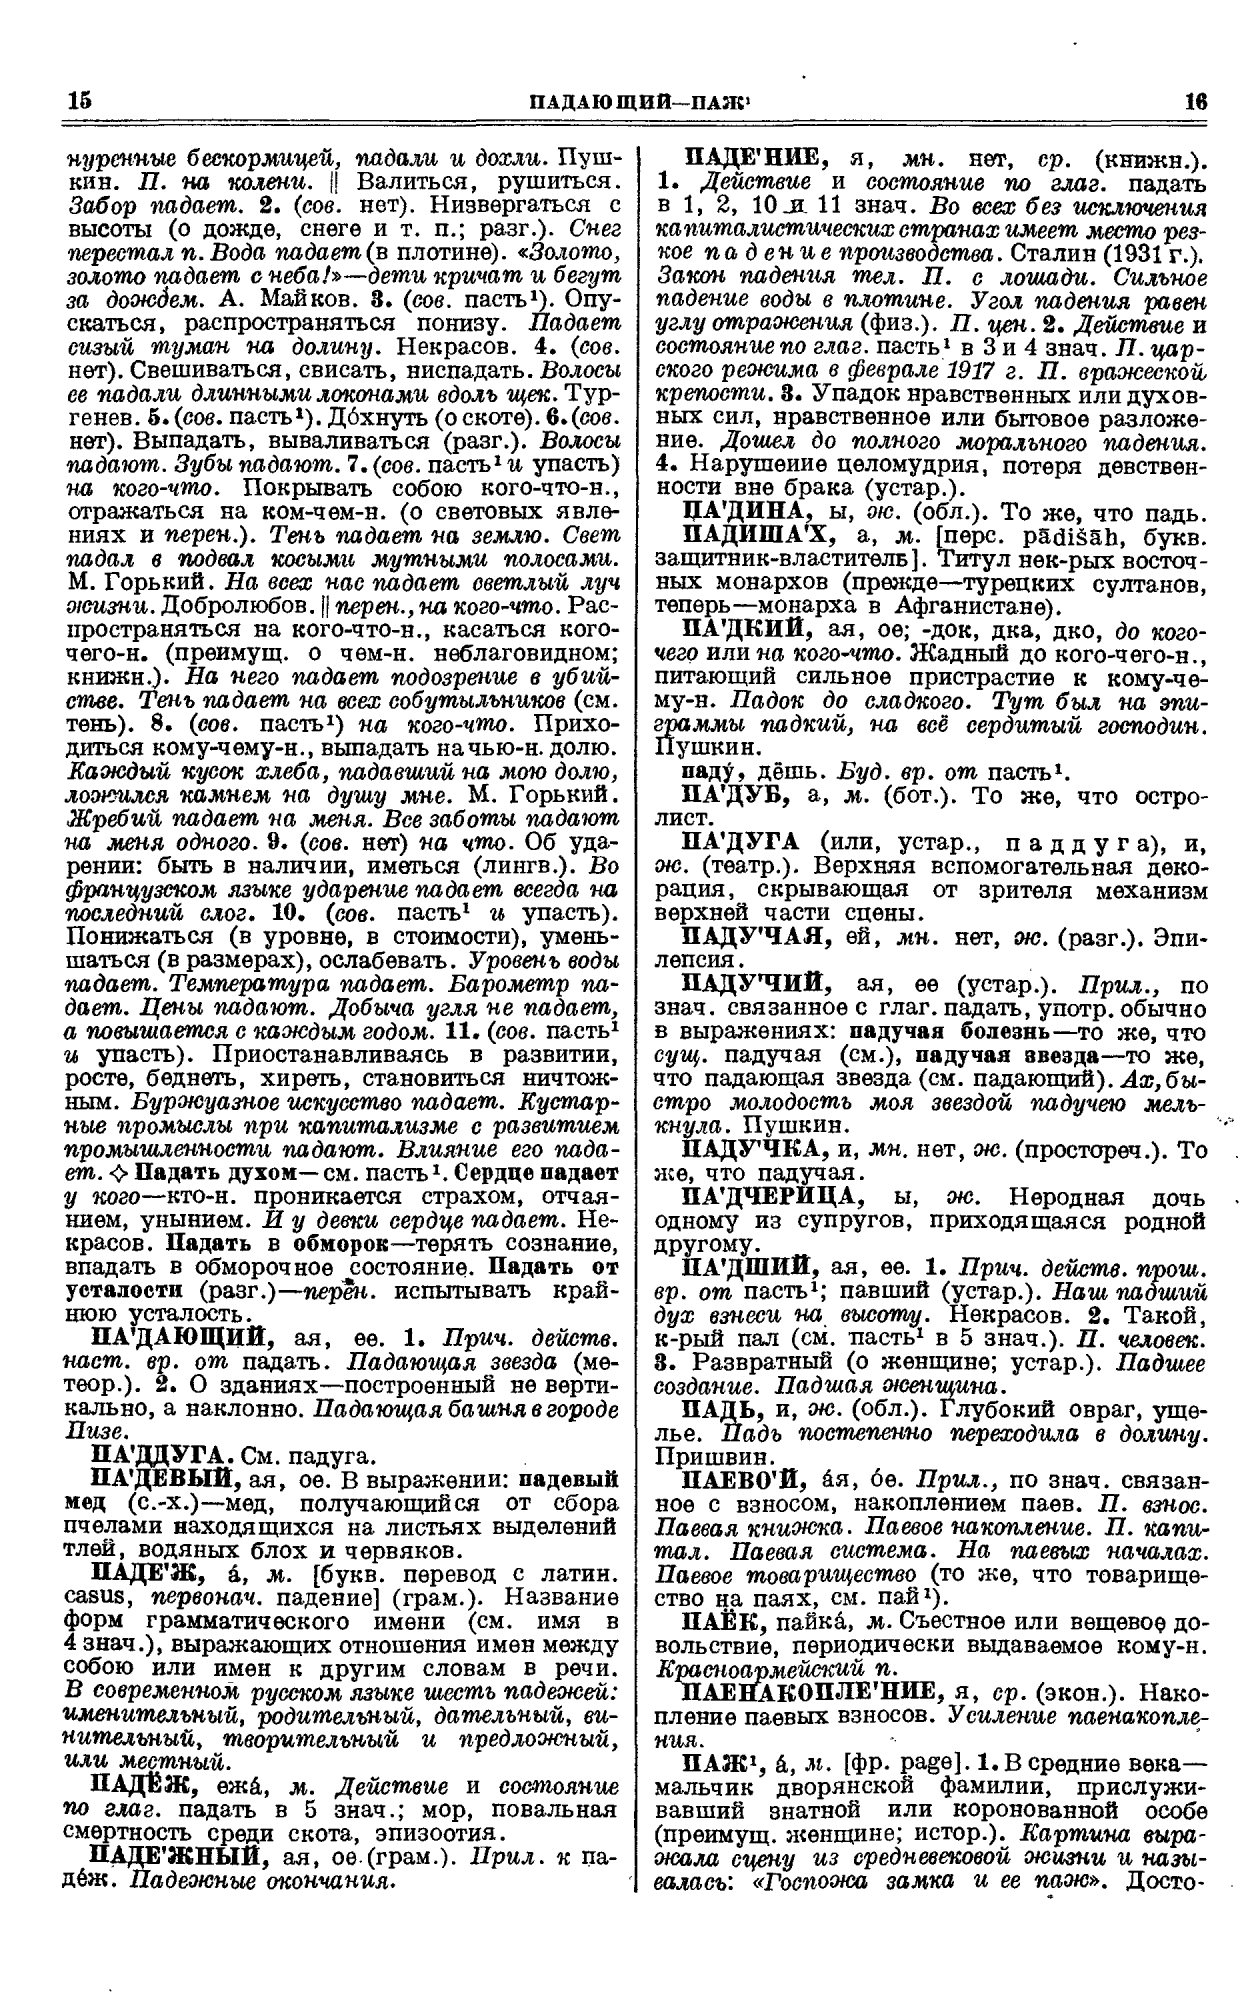 Фотокопия pdf / скан страницы 8 толкового словаря Ушакова (том 3)